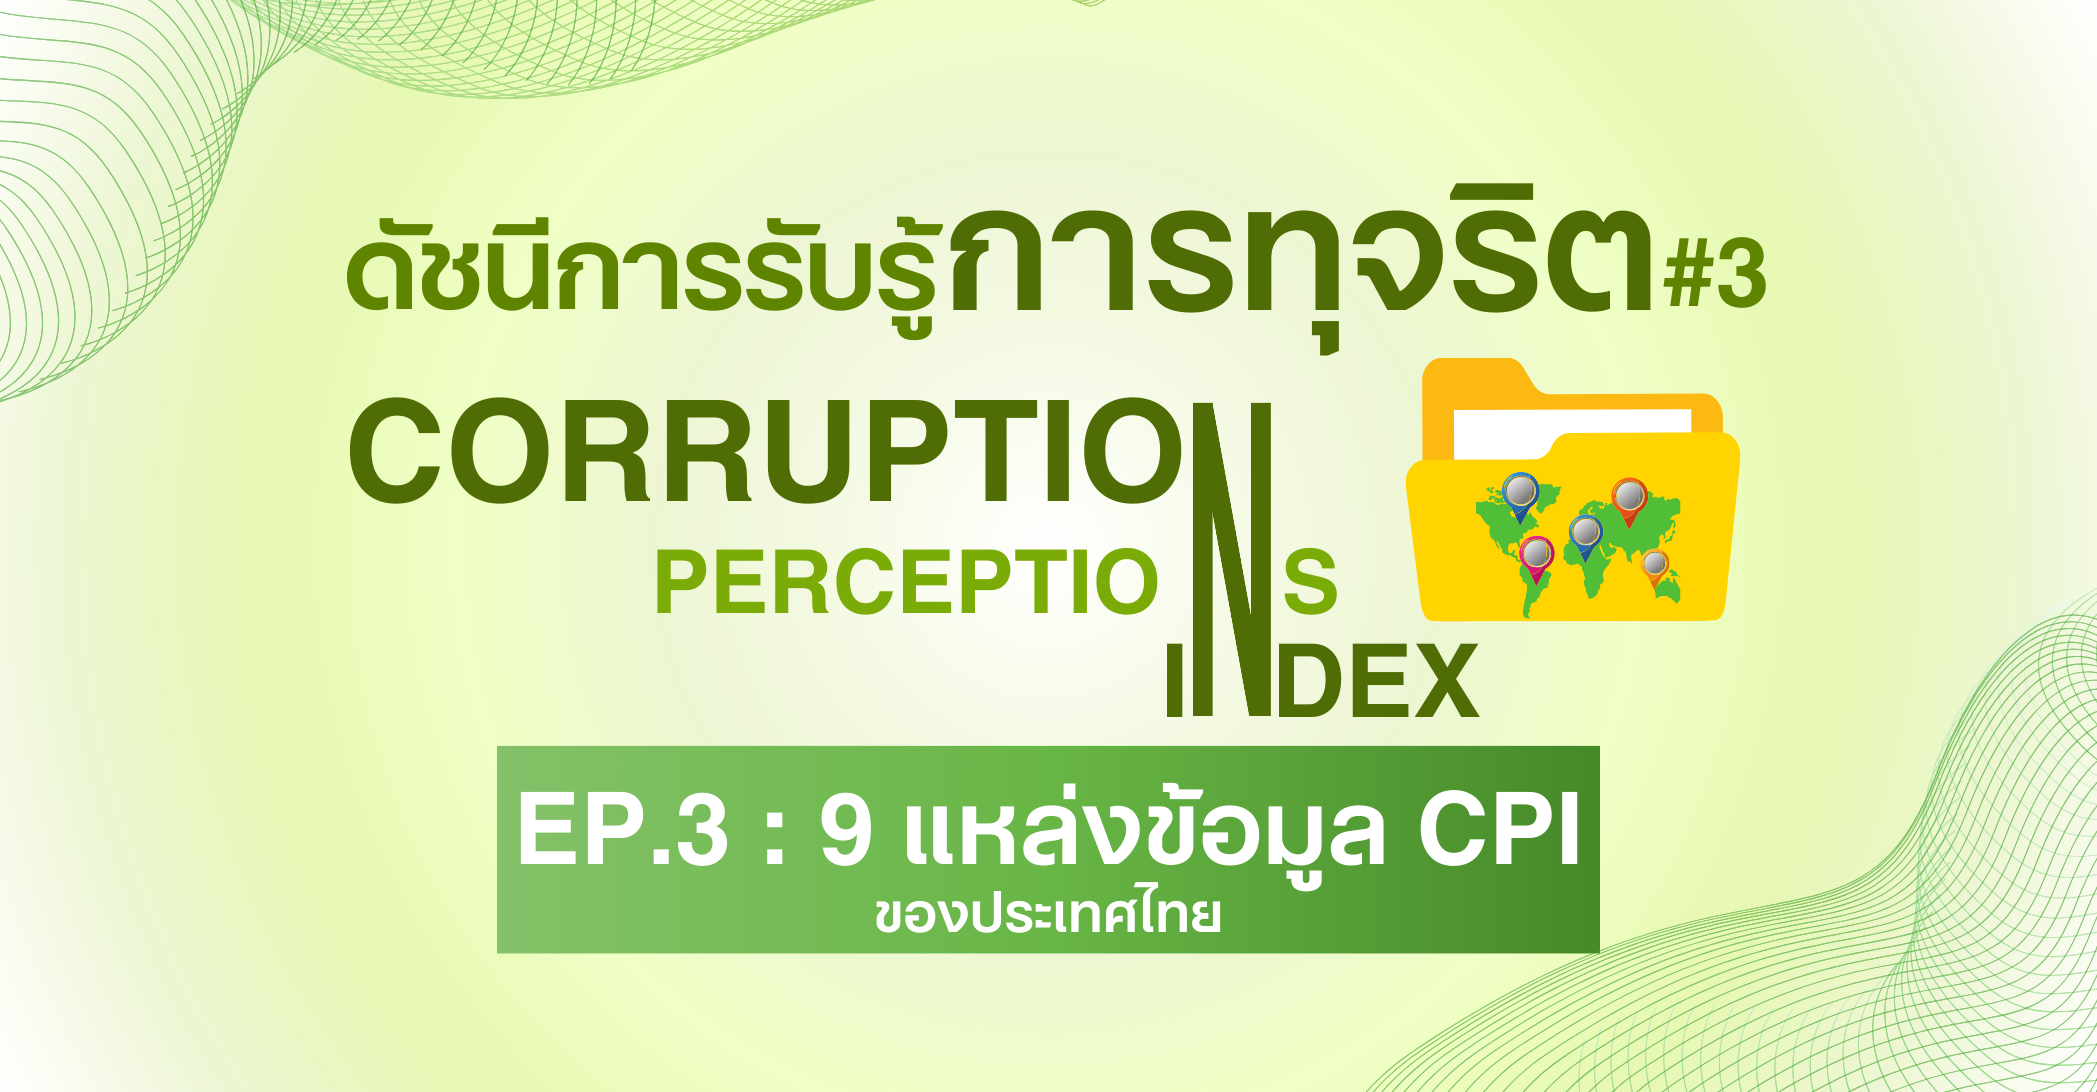 ดัชนีการรับรู้การทุจริต Ep.3 : 9 แหล่งข้อมูลการจัดอันดับคะแนน CPI ของประเทศไทย